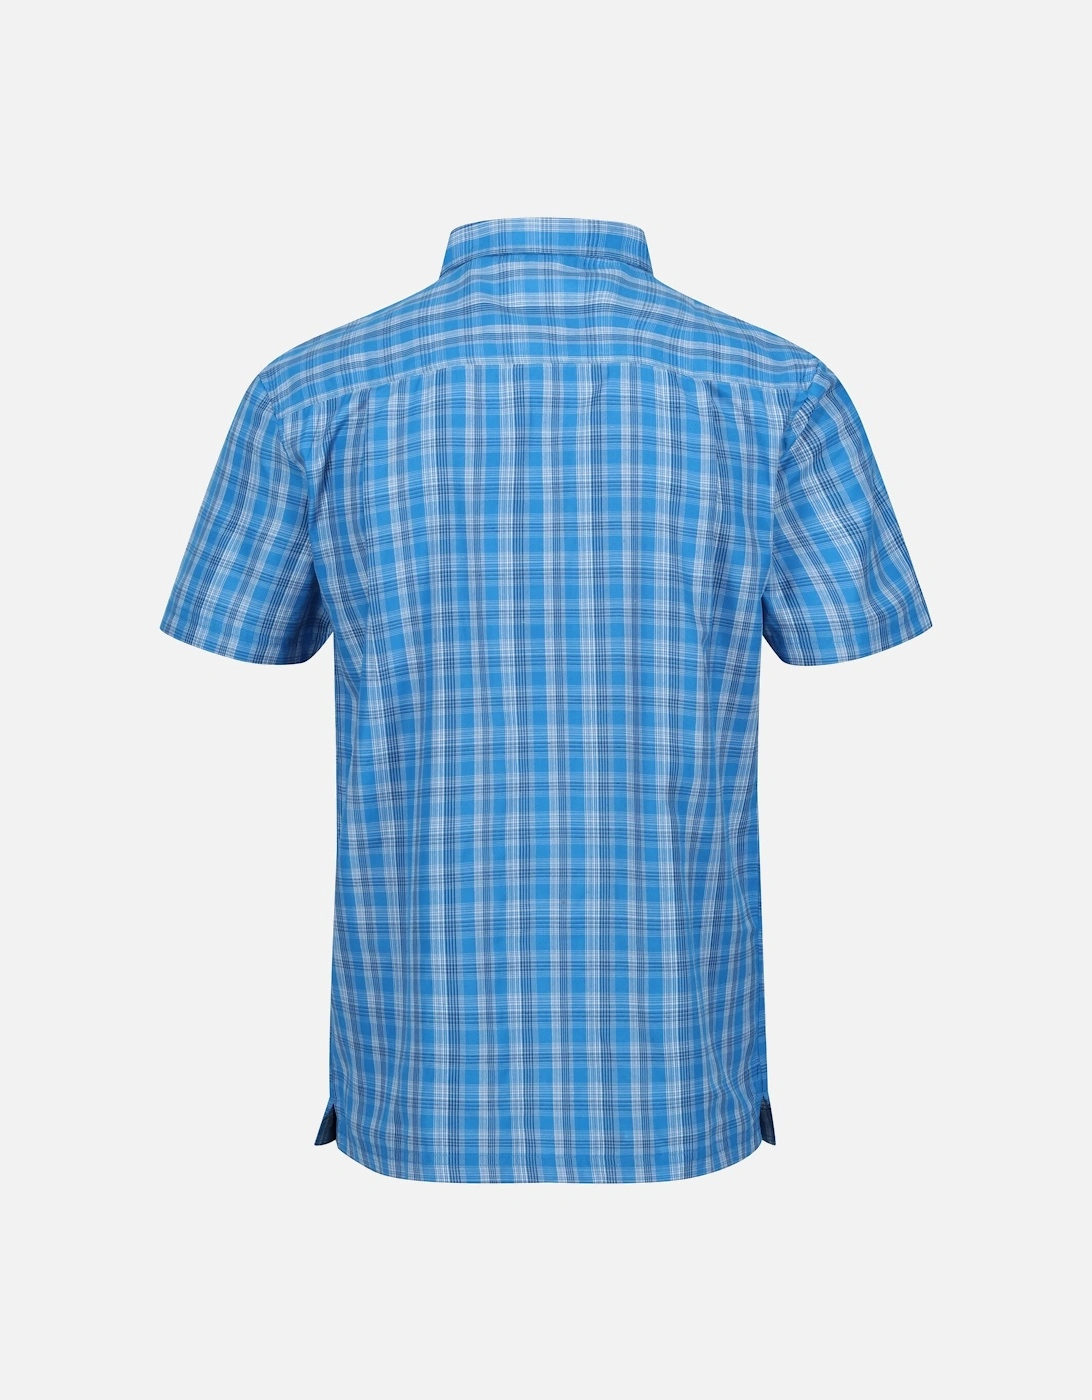 Mens Kalambo VII Quick Dry Short-Sleeved Shirt